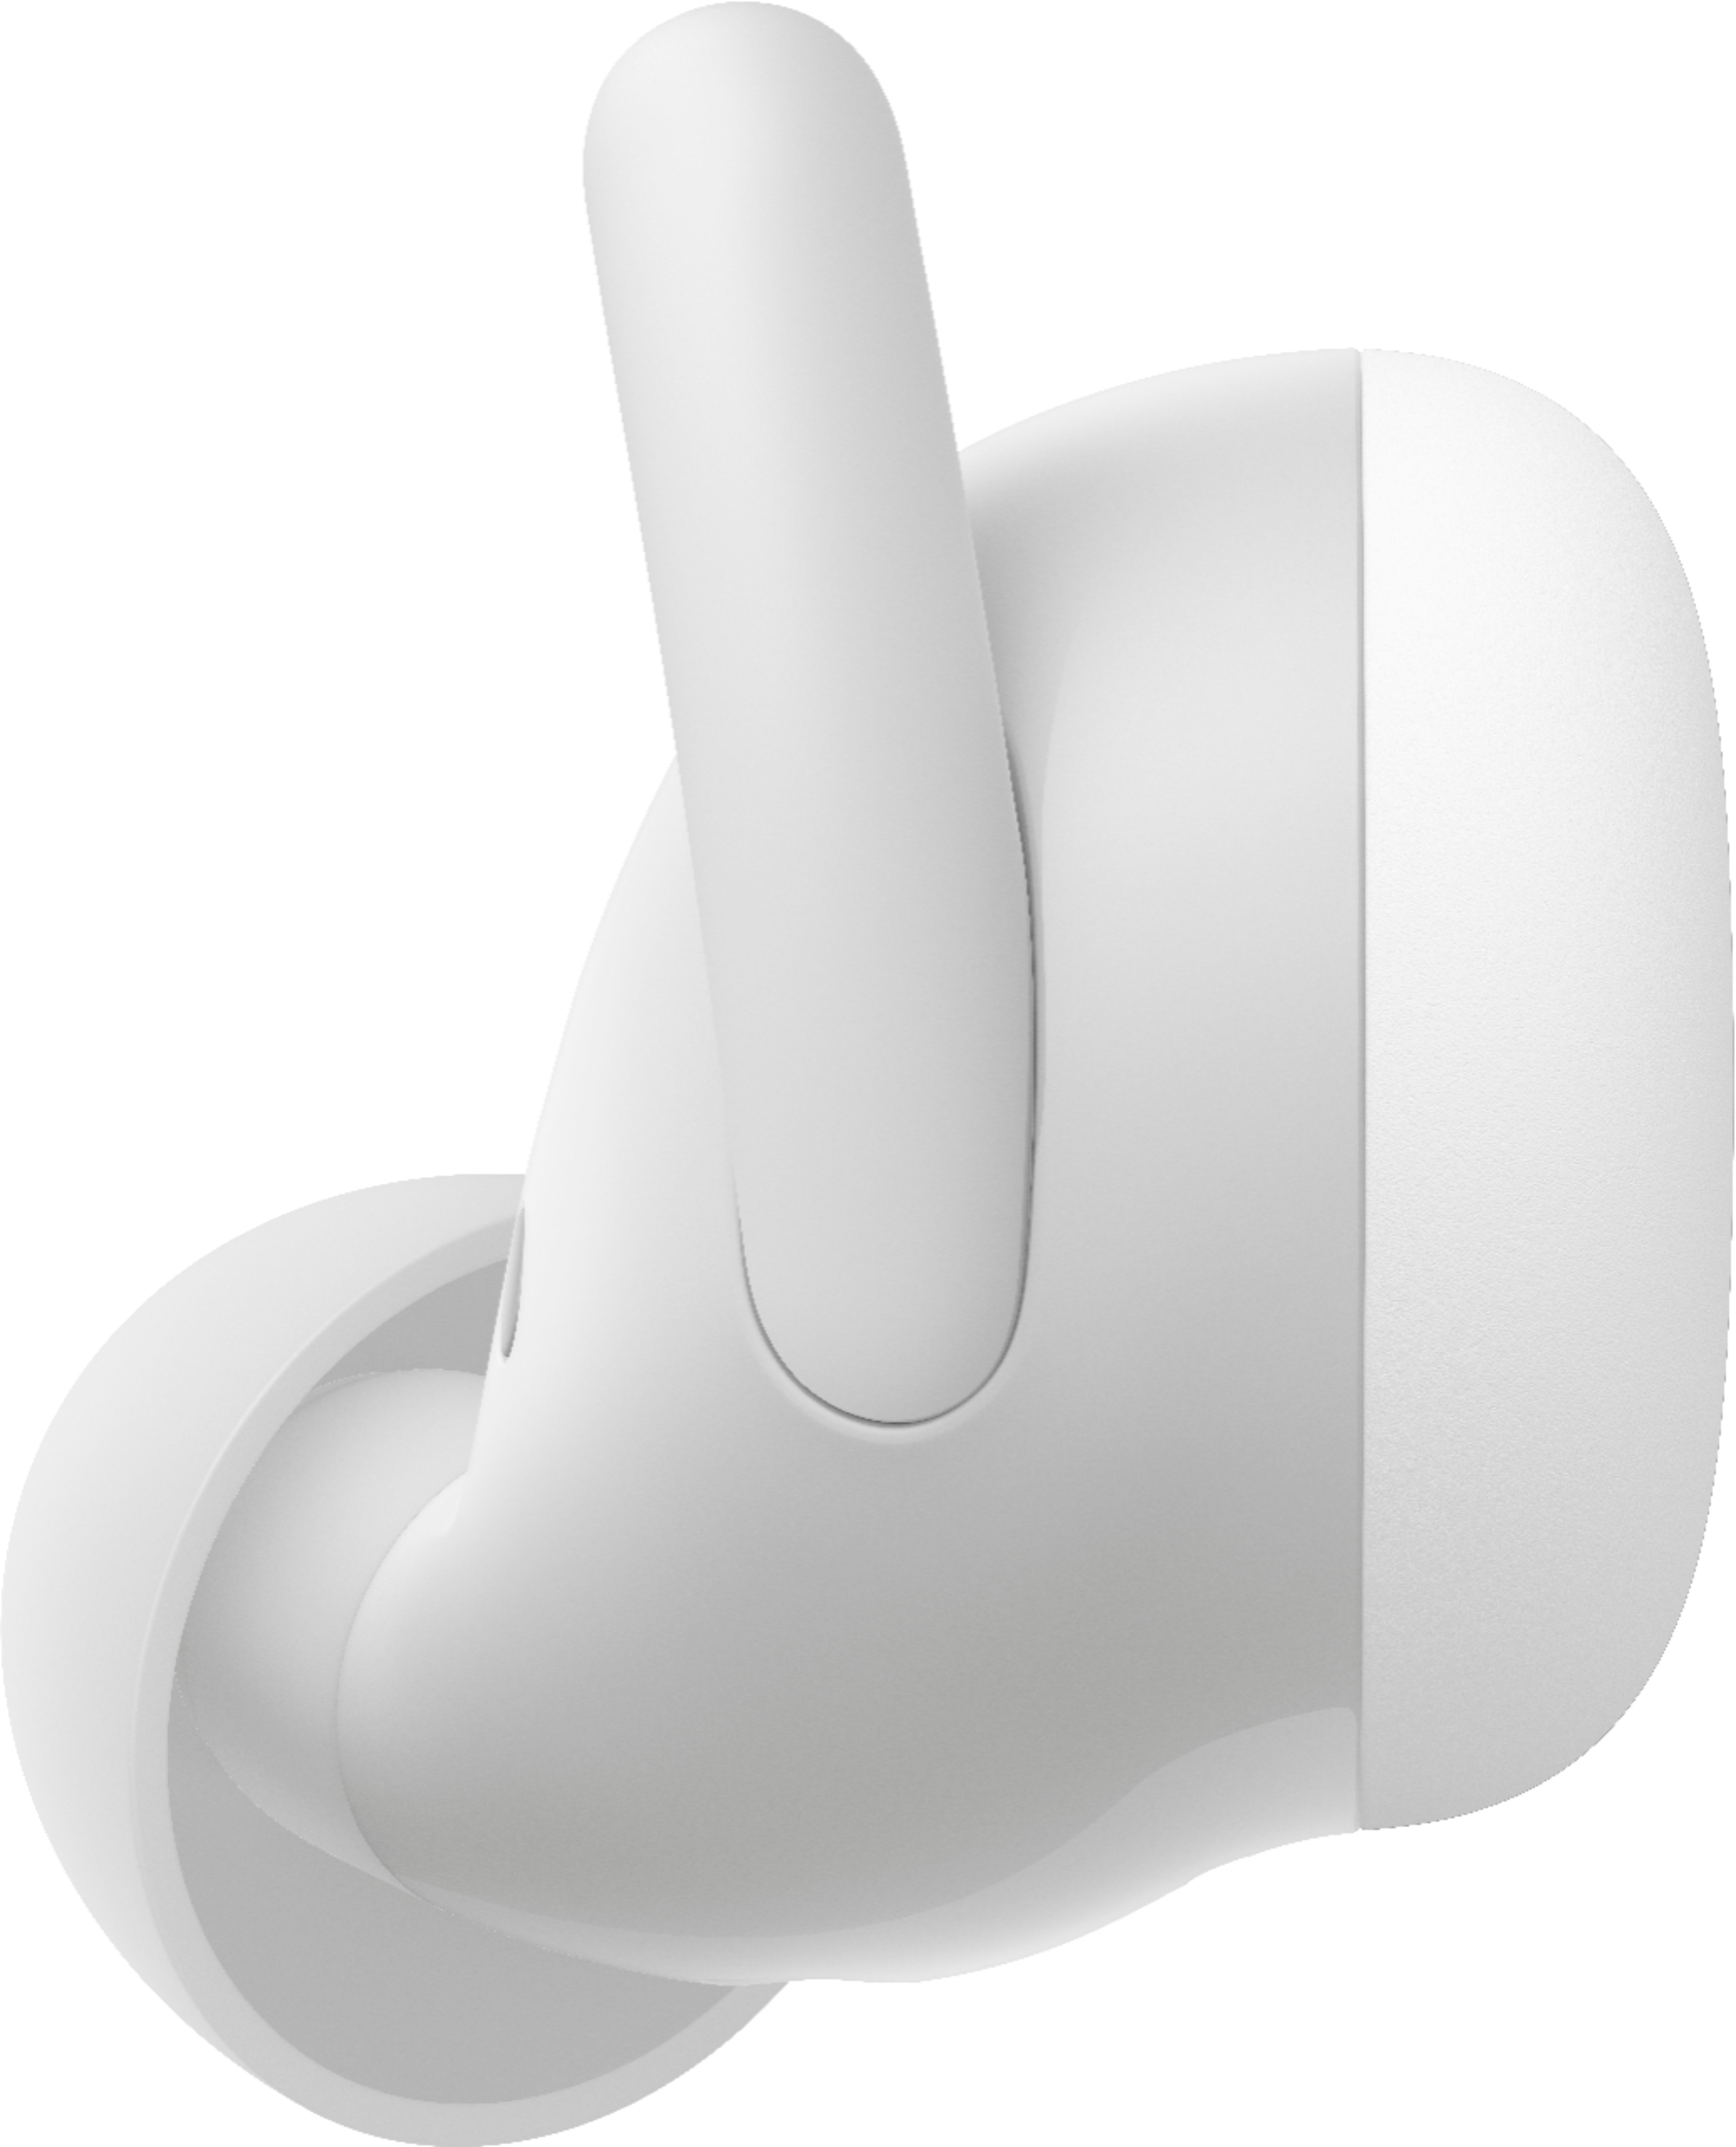 Google Pixel Buds A-Series True Wireless In-Ear Headphones Clearly 